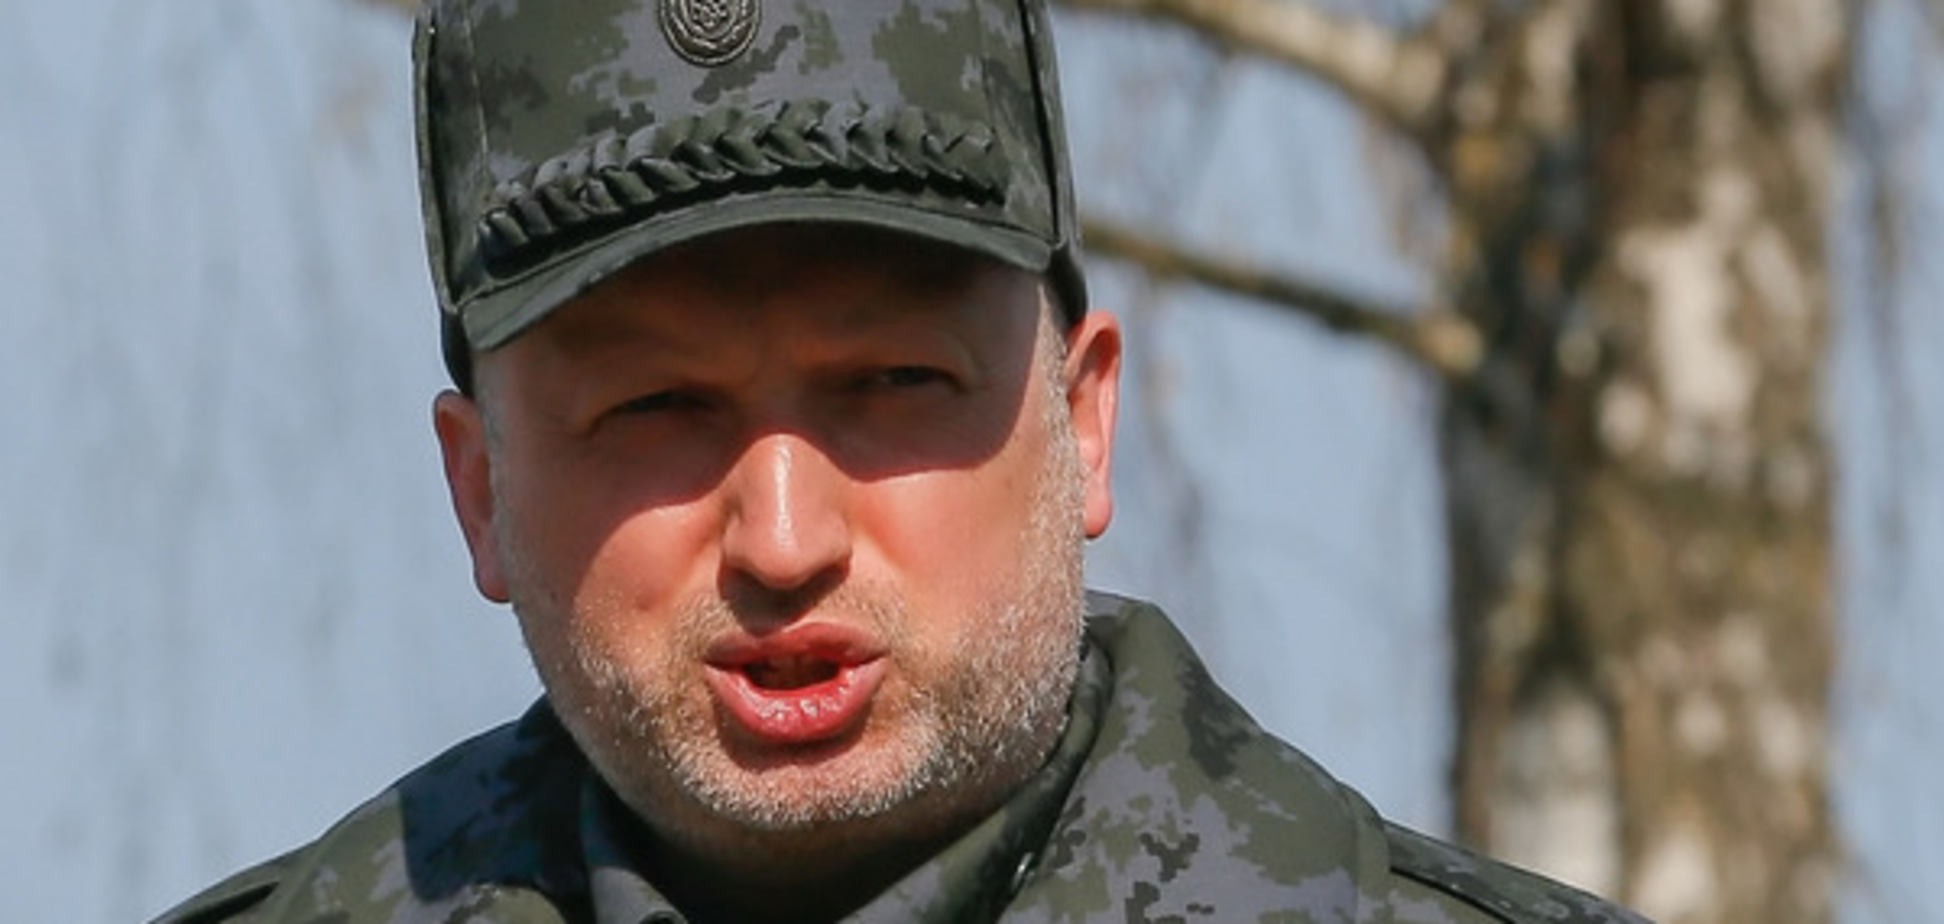 Обострение на Донбассе: Турчинов назвал причину больших потерь сил АТО